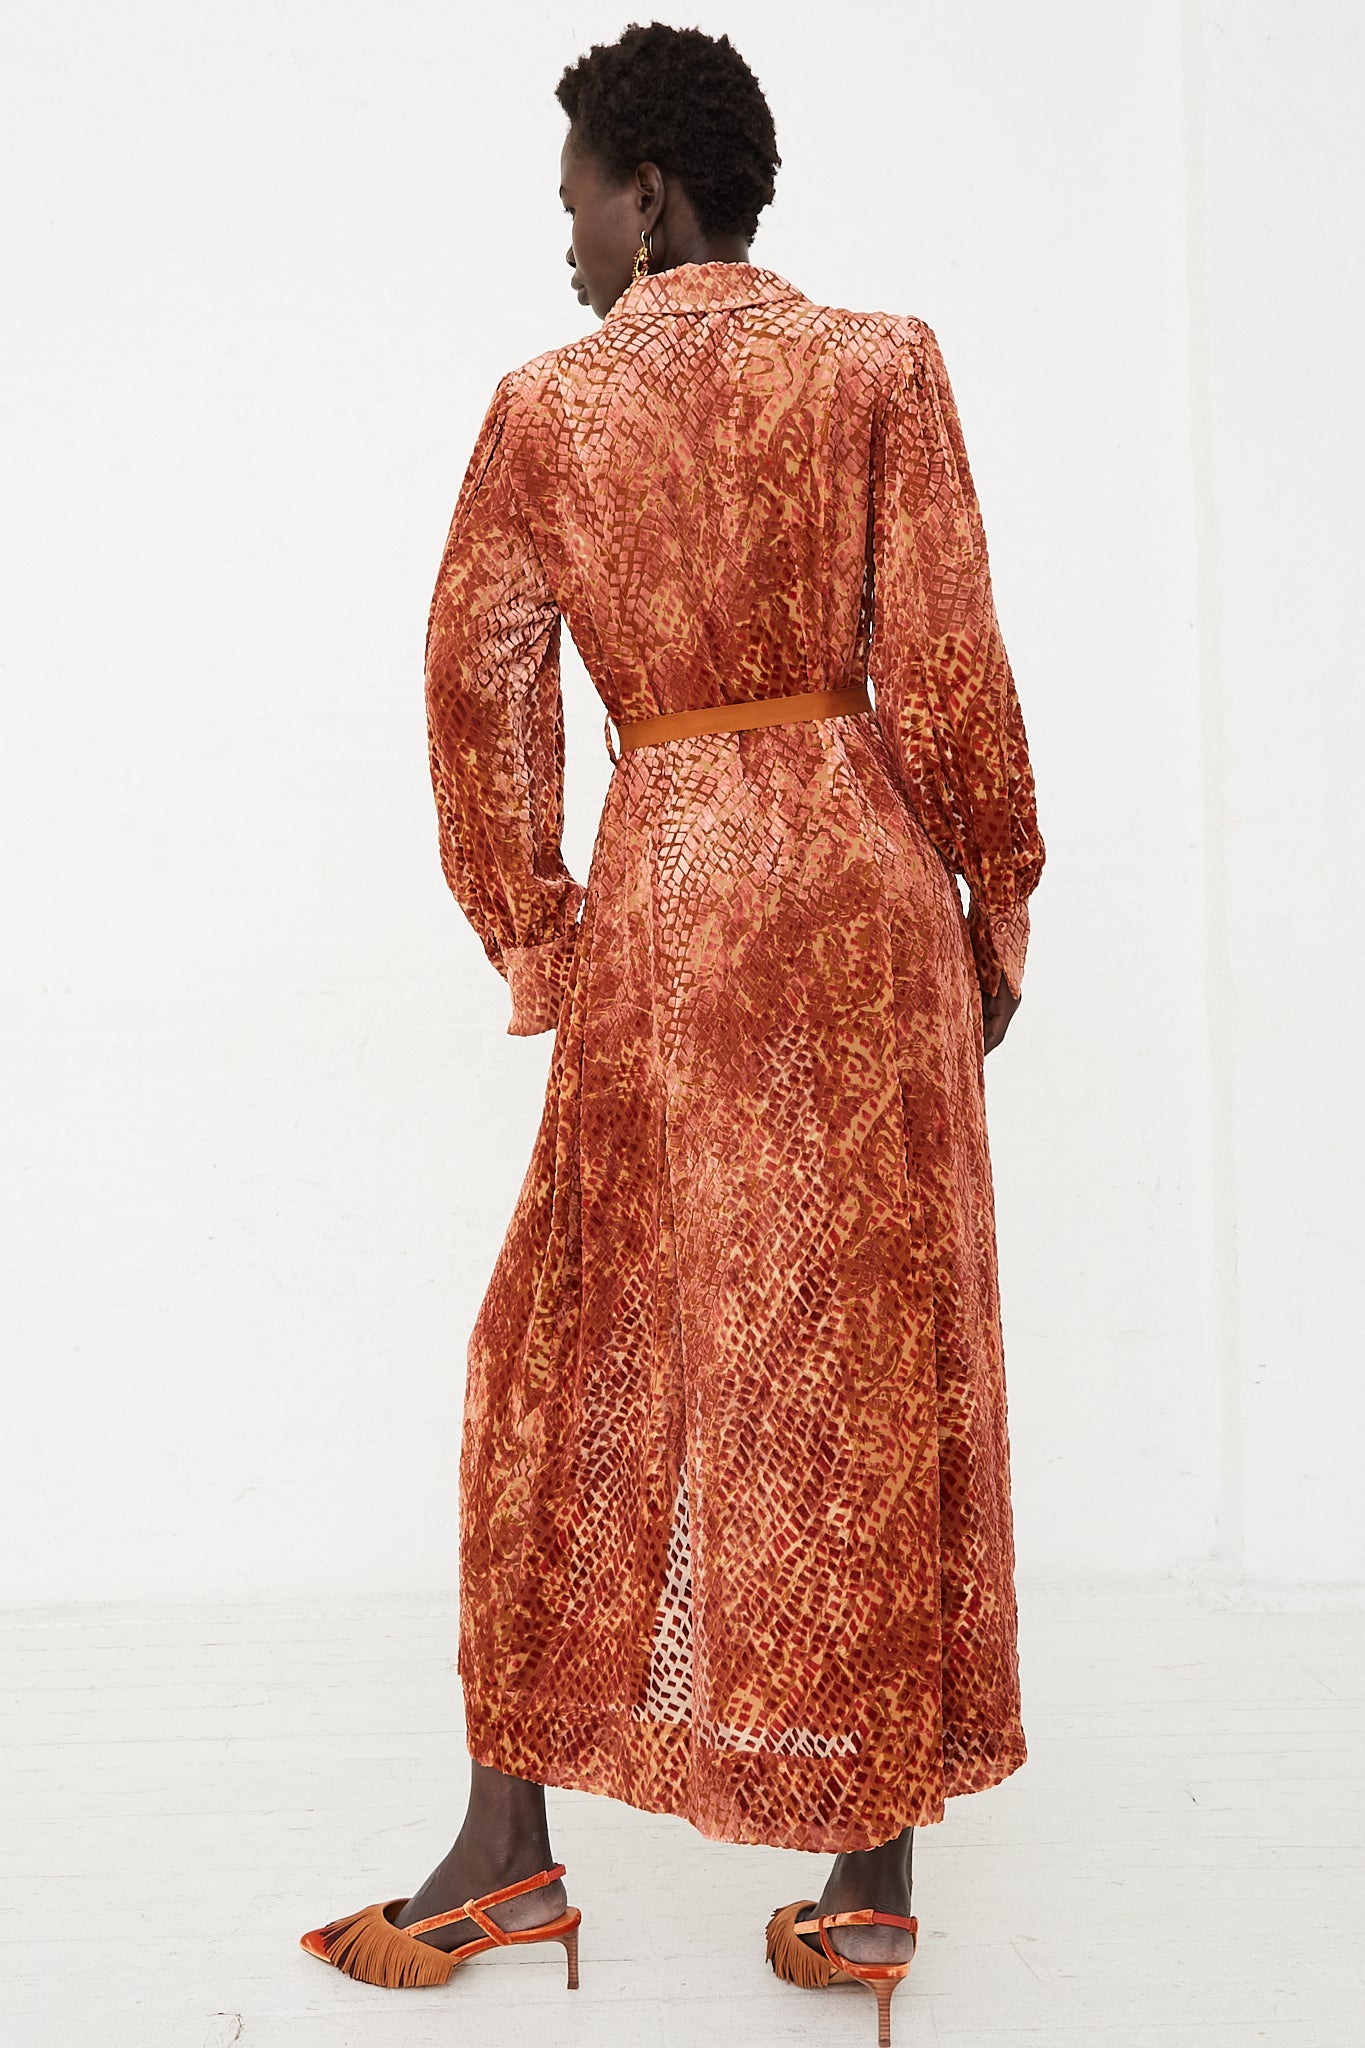 Thalia Velvet Dress in Sienna by Ulla Johnson for Oroboro Back